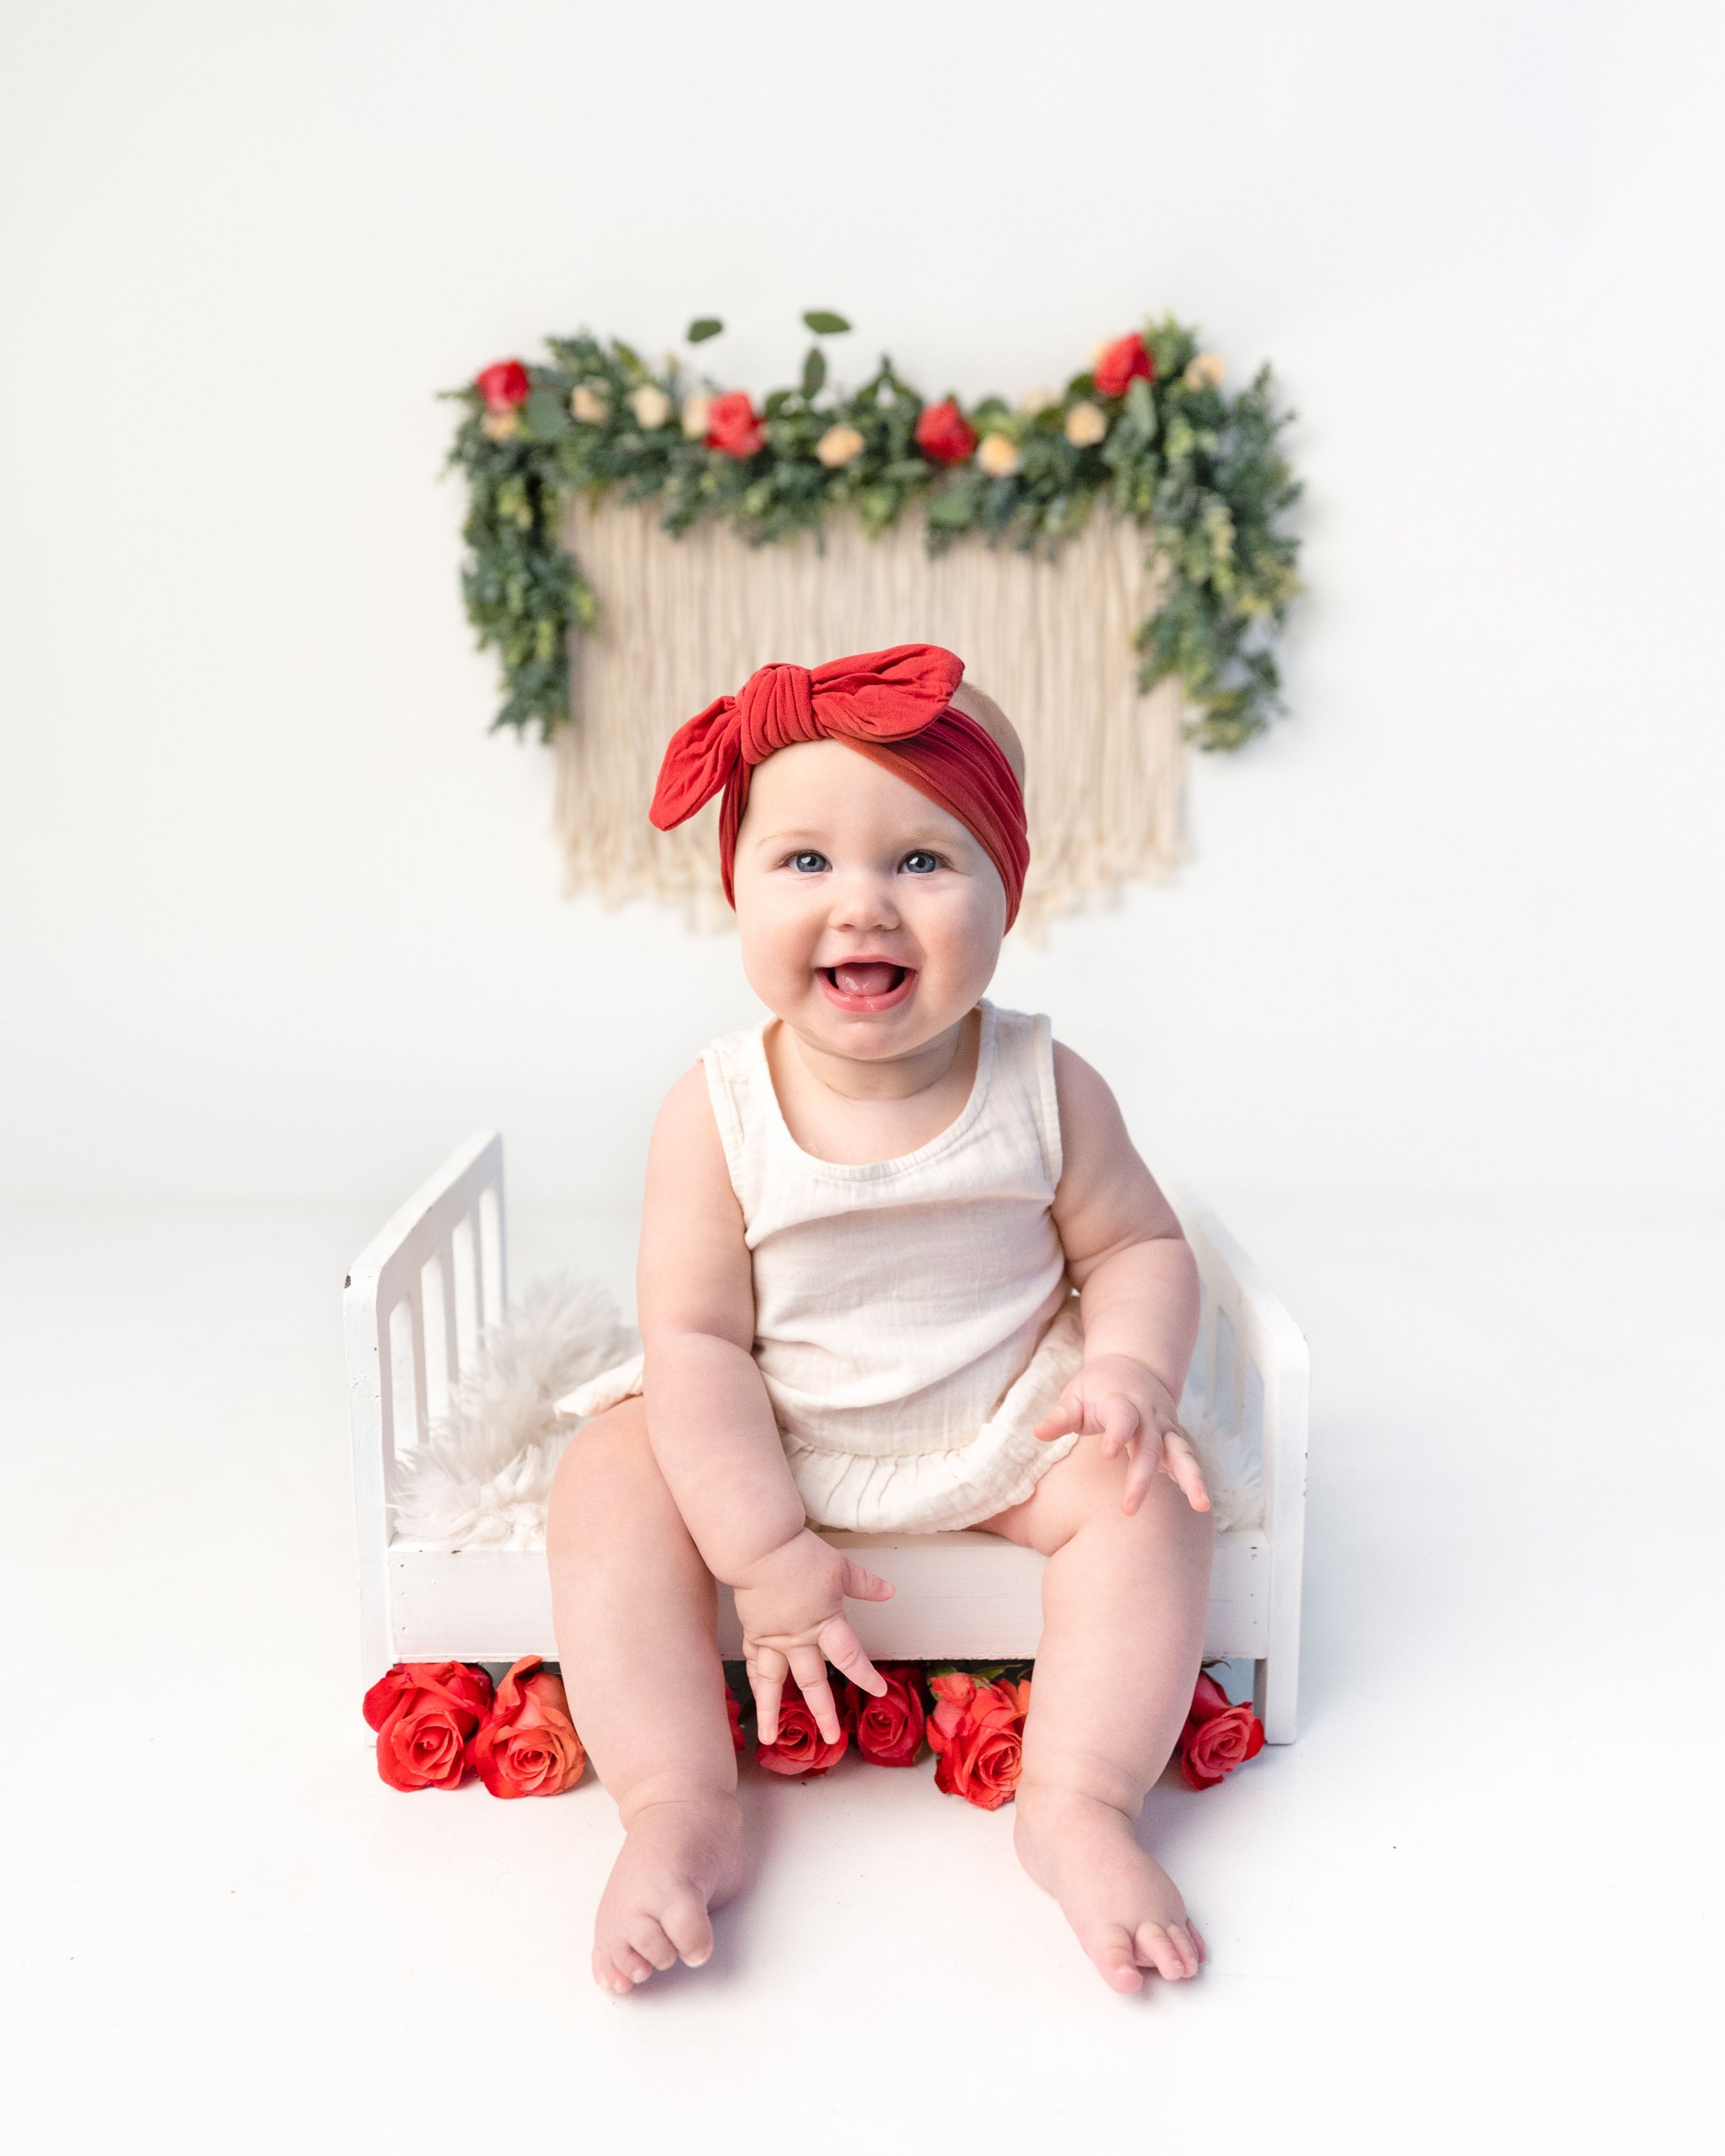 baby-girl-milk-bath-flowers-milestone-photography-newborn-photographer-spokane-washington.jpg